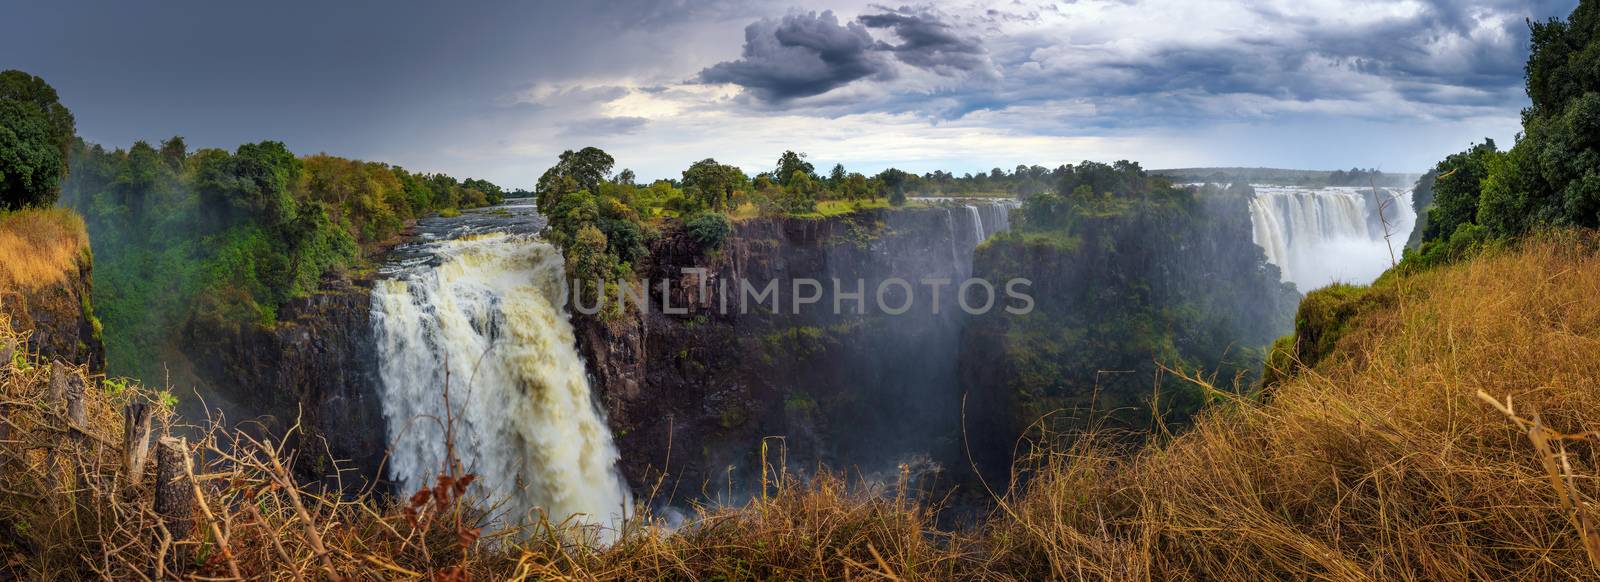 Panorama of Victoria Falls on Zambezi River in Zimbabwe by nickfox